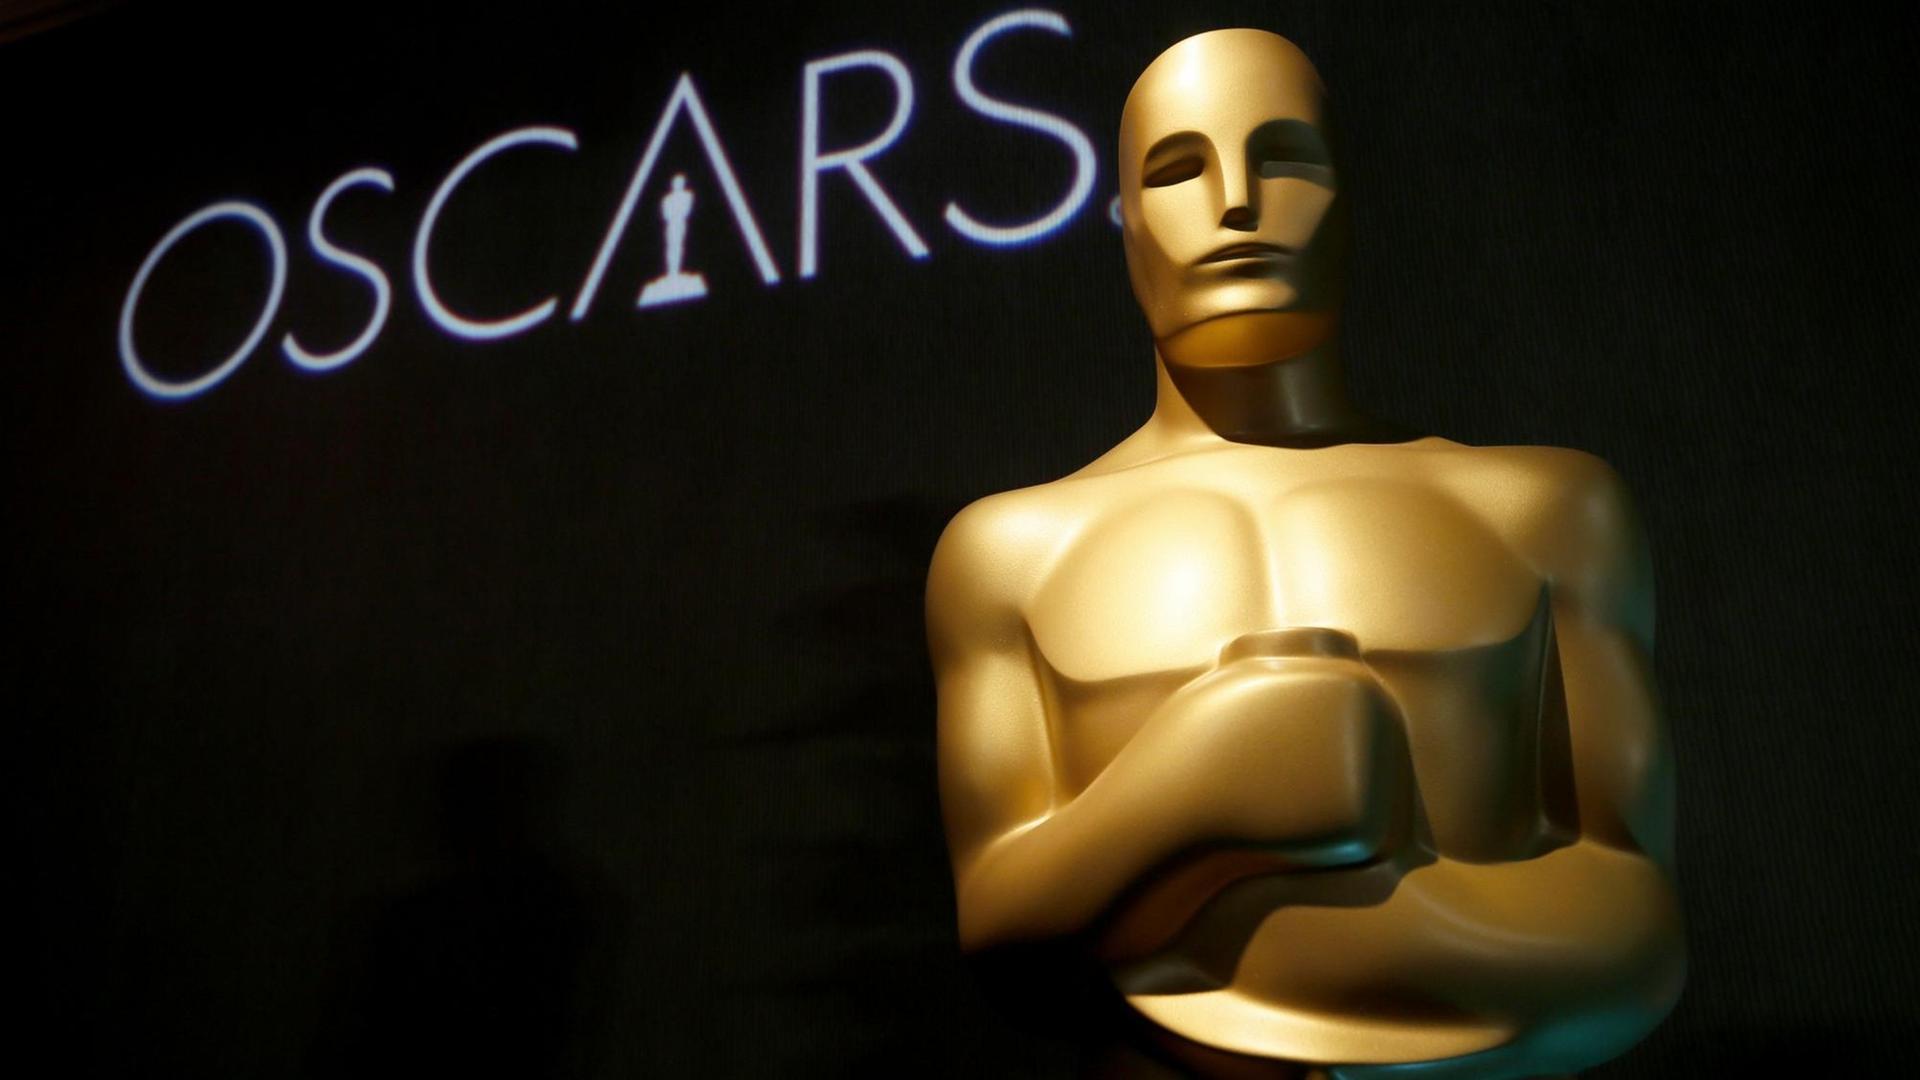 Die Oscar-Statue in Gold bei einer früheren Preisverleihung.